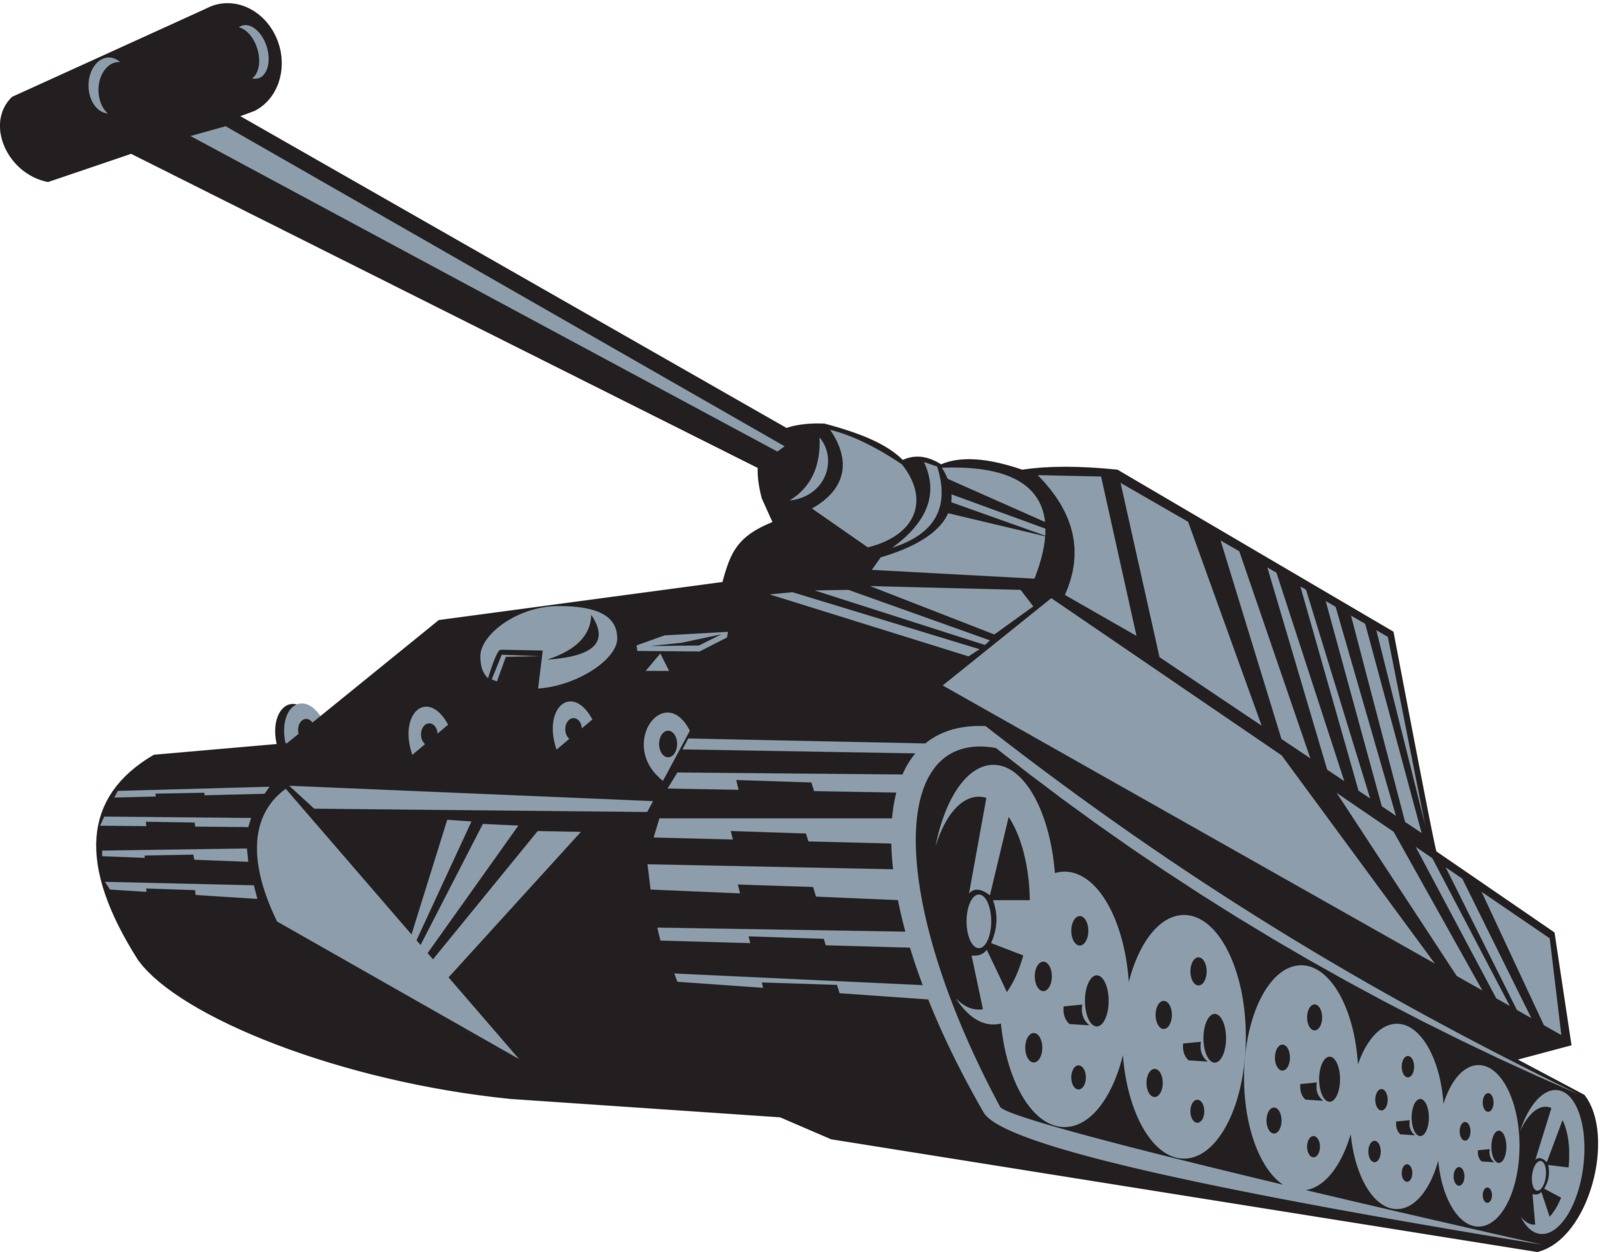 Army Tank Retro by patrimonio